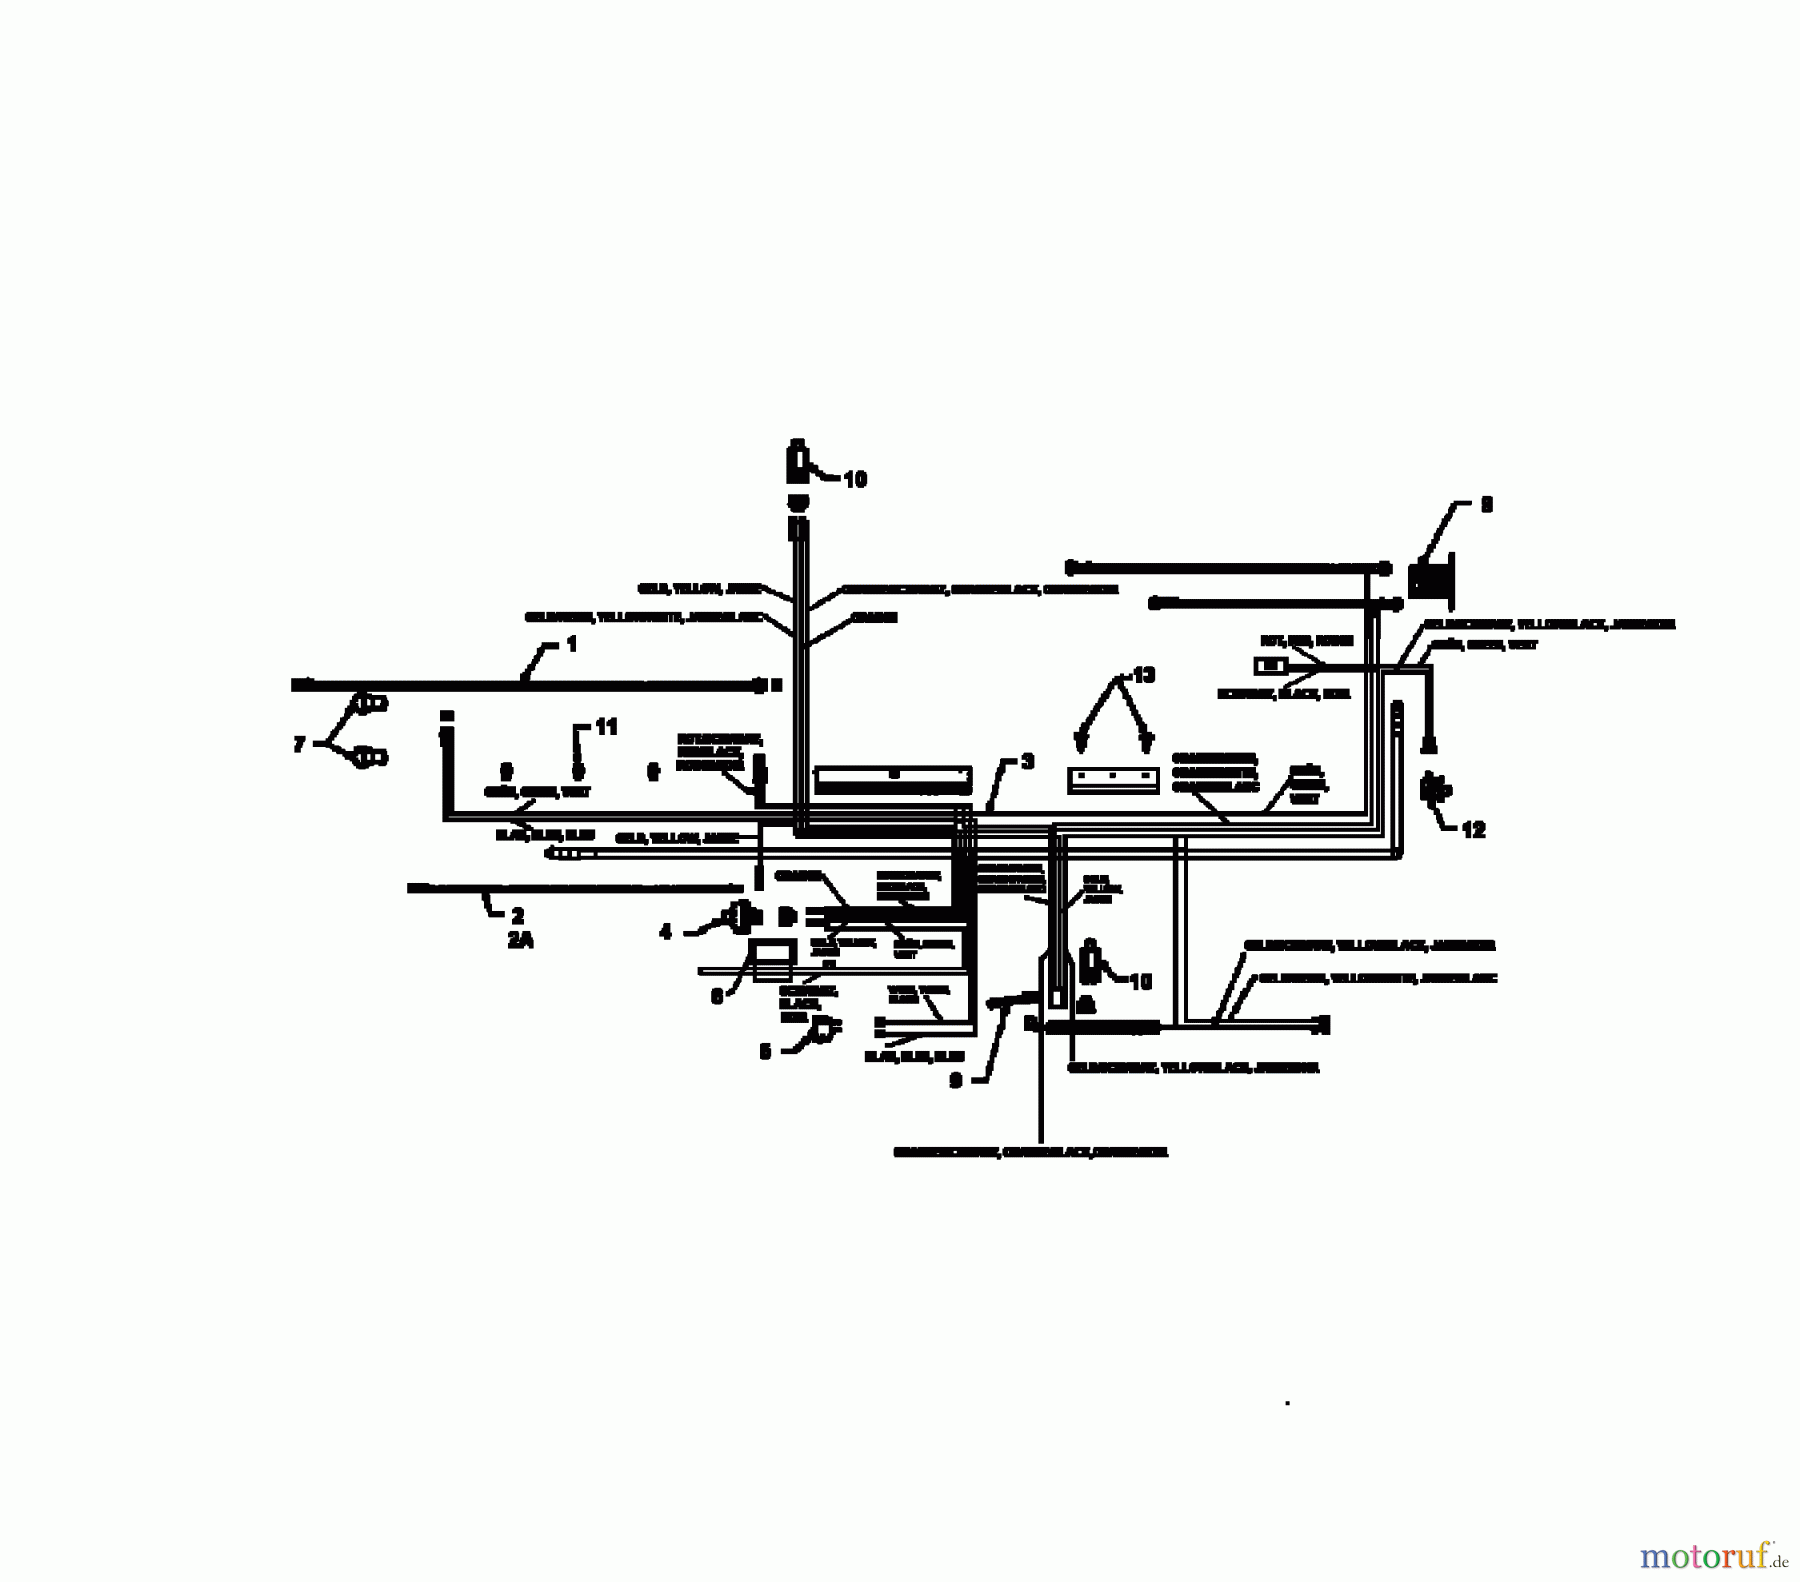  Brill Rasentraktoren 102/13 RTH 136N767N629  (1996) Schaltplan Vanguard